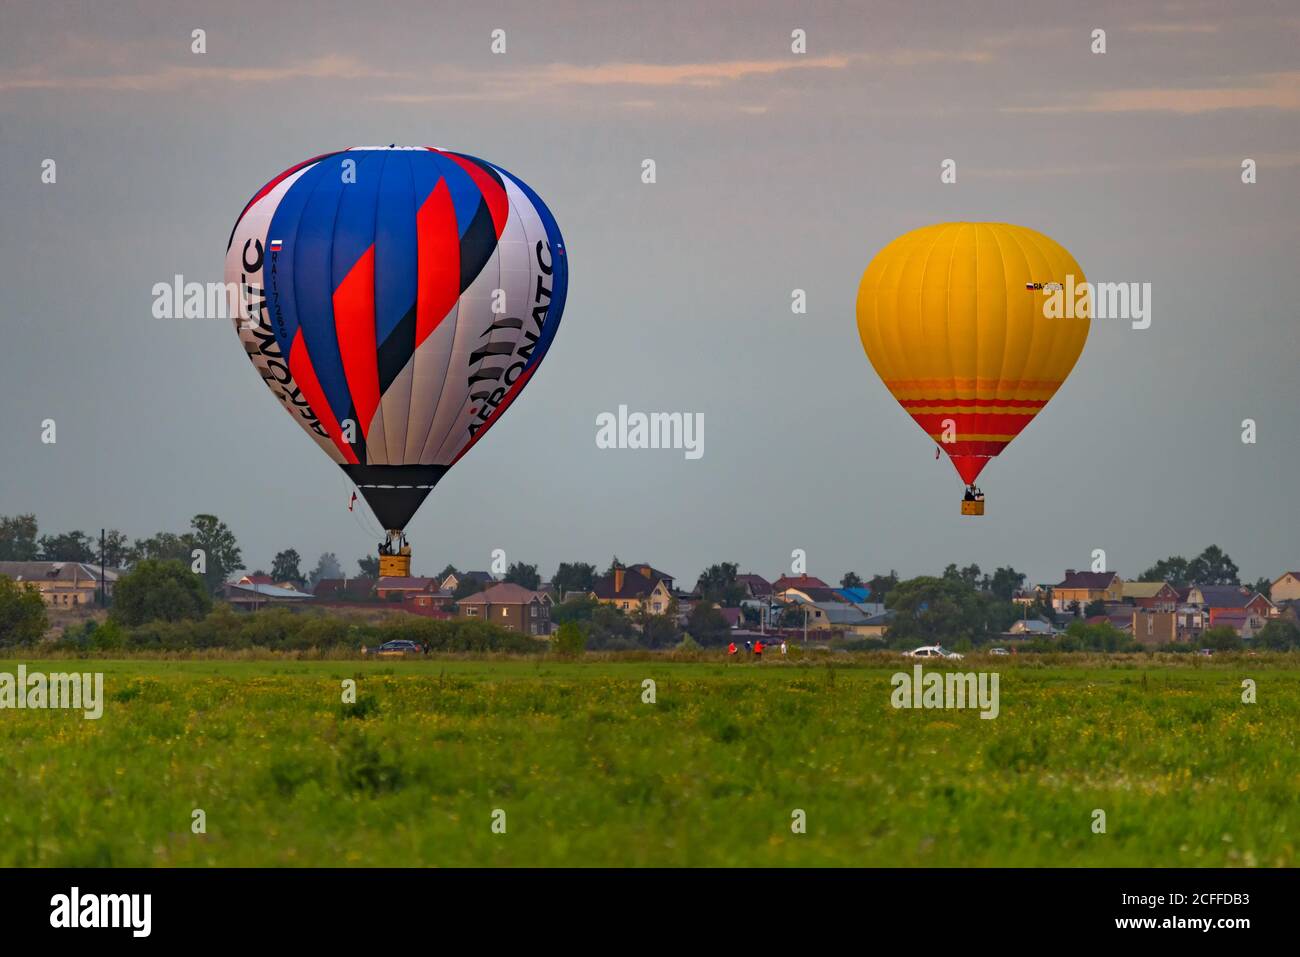 RYAZAN, RUSSIE - 16 AOÛT 2020 : deux ballons d'air chaud survolant un champ au crépuscule avec un village en arrière-plan Banque D'Images